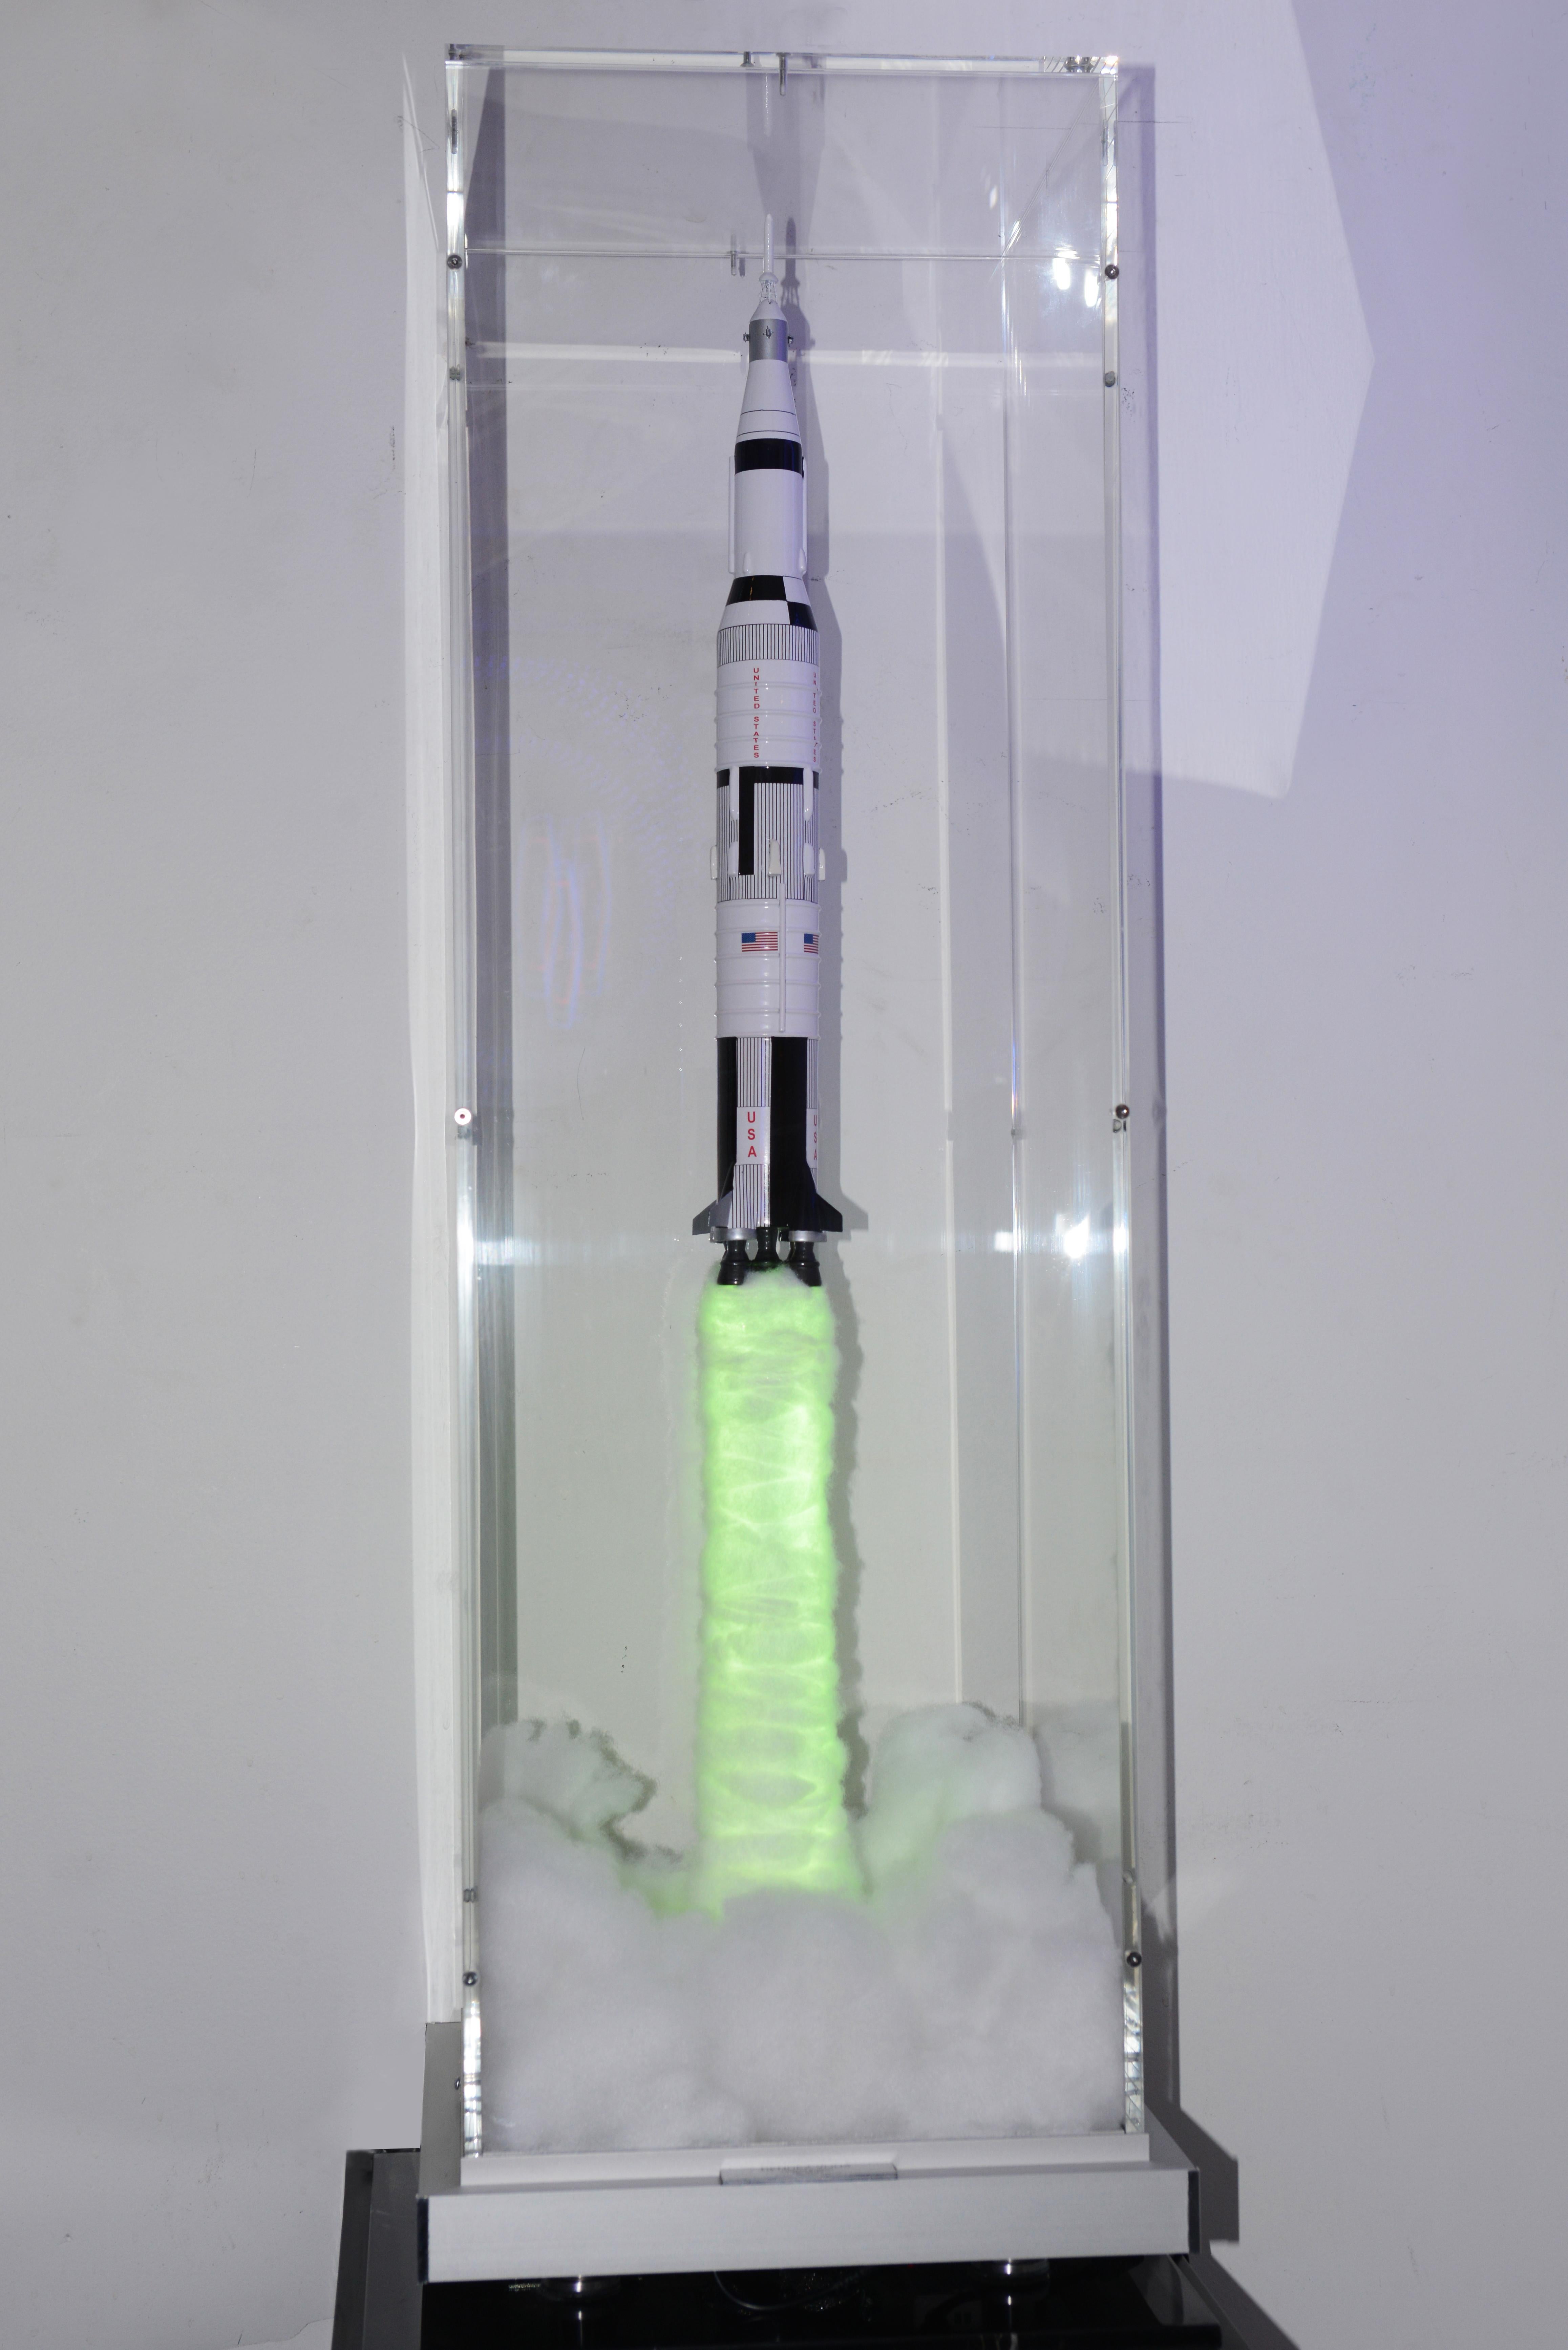 lego rocket display